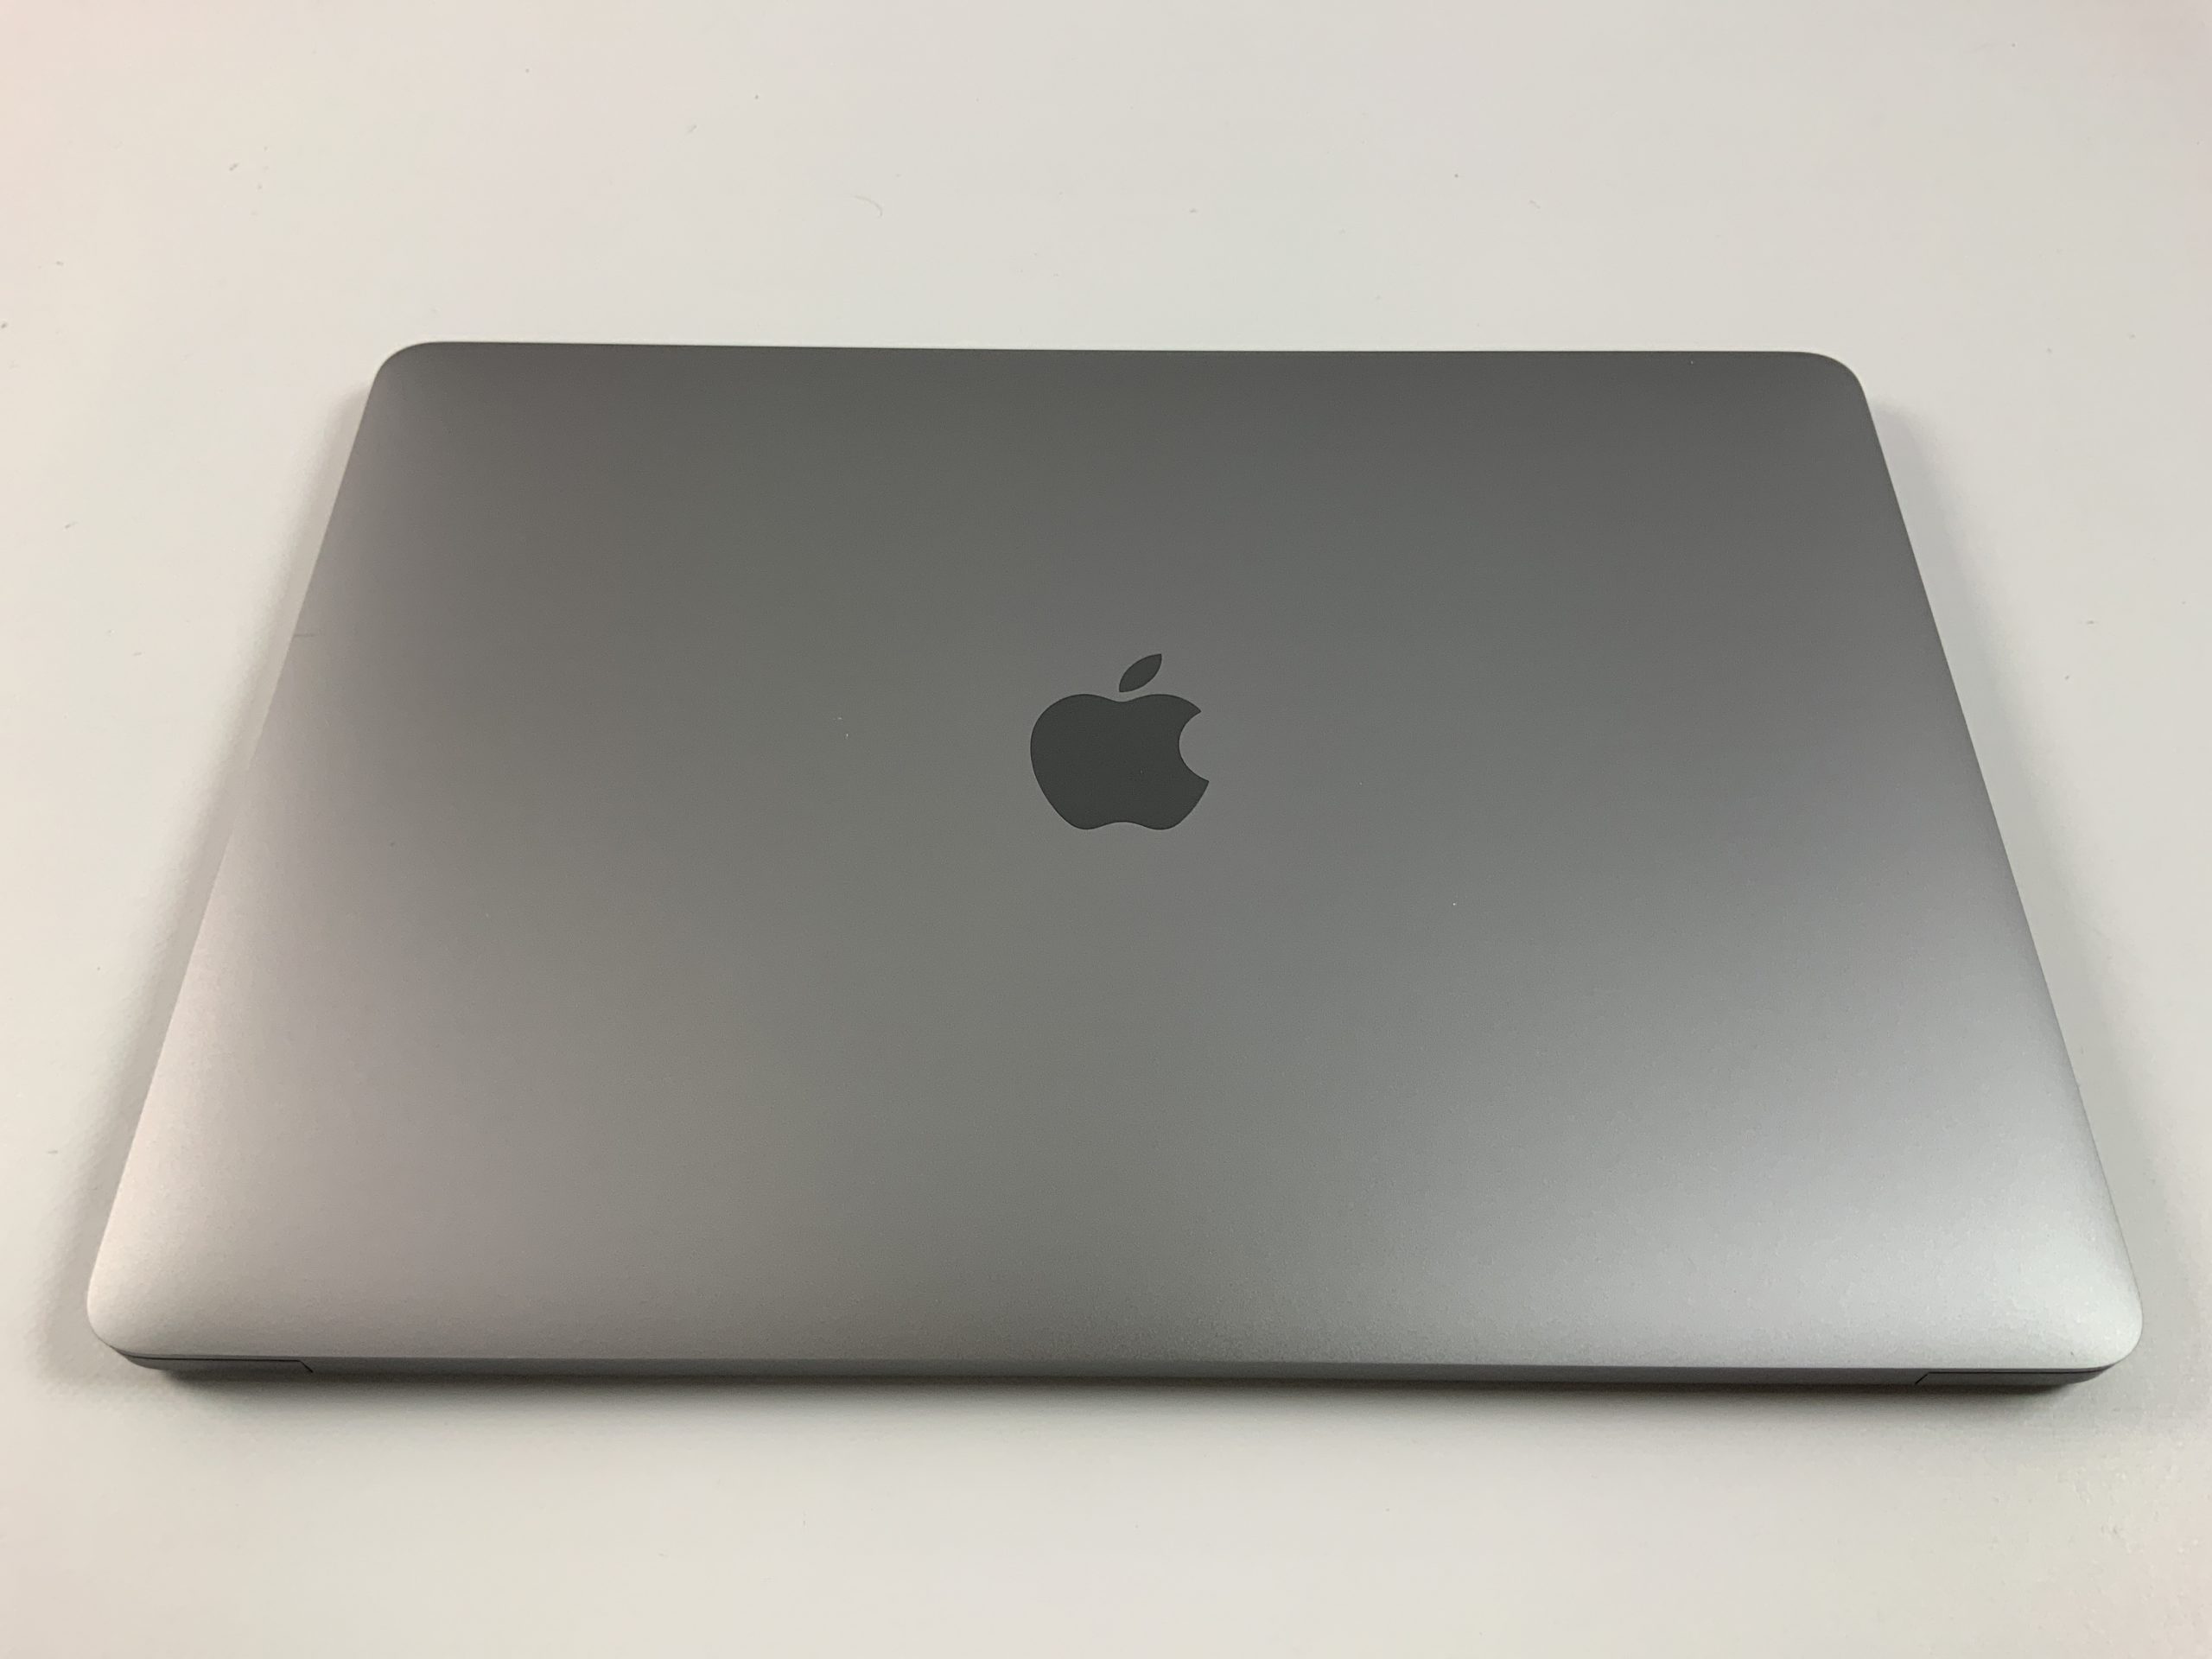 MacBook Pro 13" 4TBT Mid 2019 (Intel Quad-Core i5 2.4 GHz 16 GB RAM 512 GB SSD), Space Gray, Intel Quad-Core i5 2.4 GHz, 16 GB RAM, 512 GB SSD, Bild 3